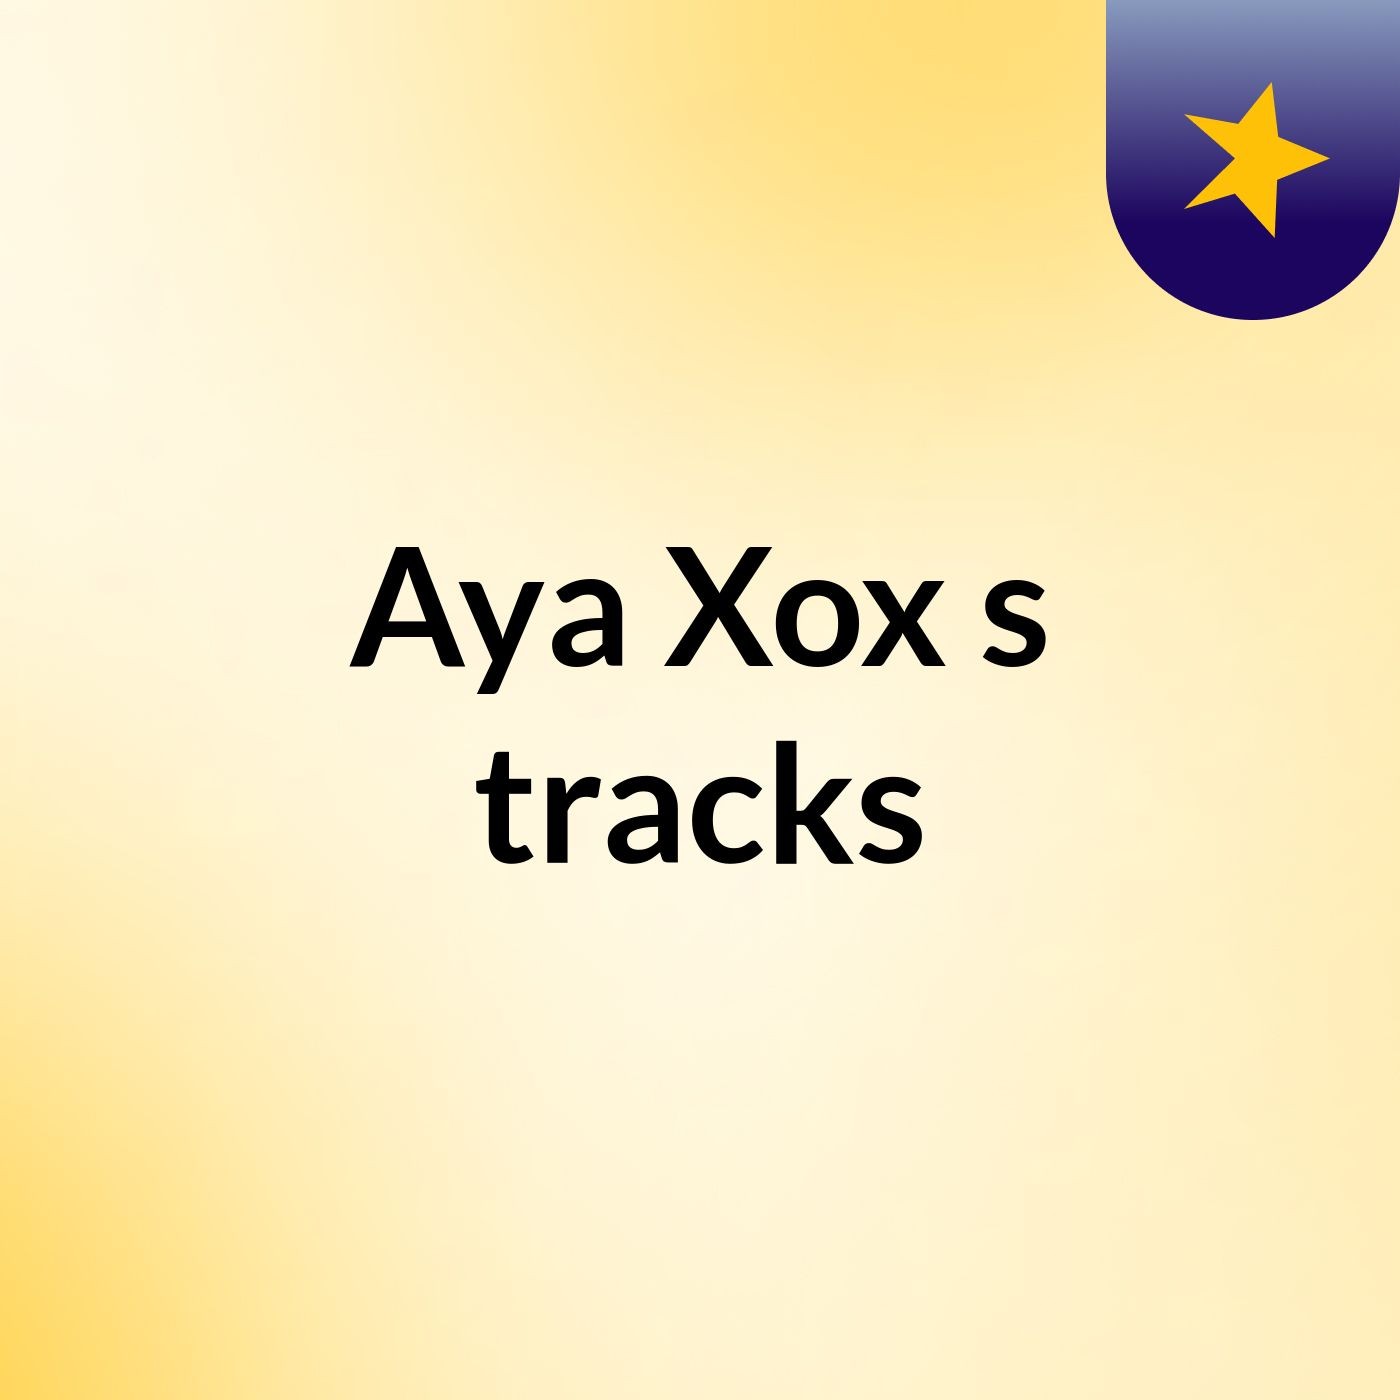 Aya Xox's tracks